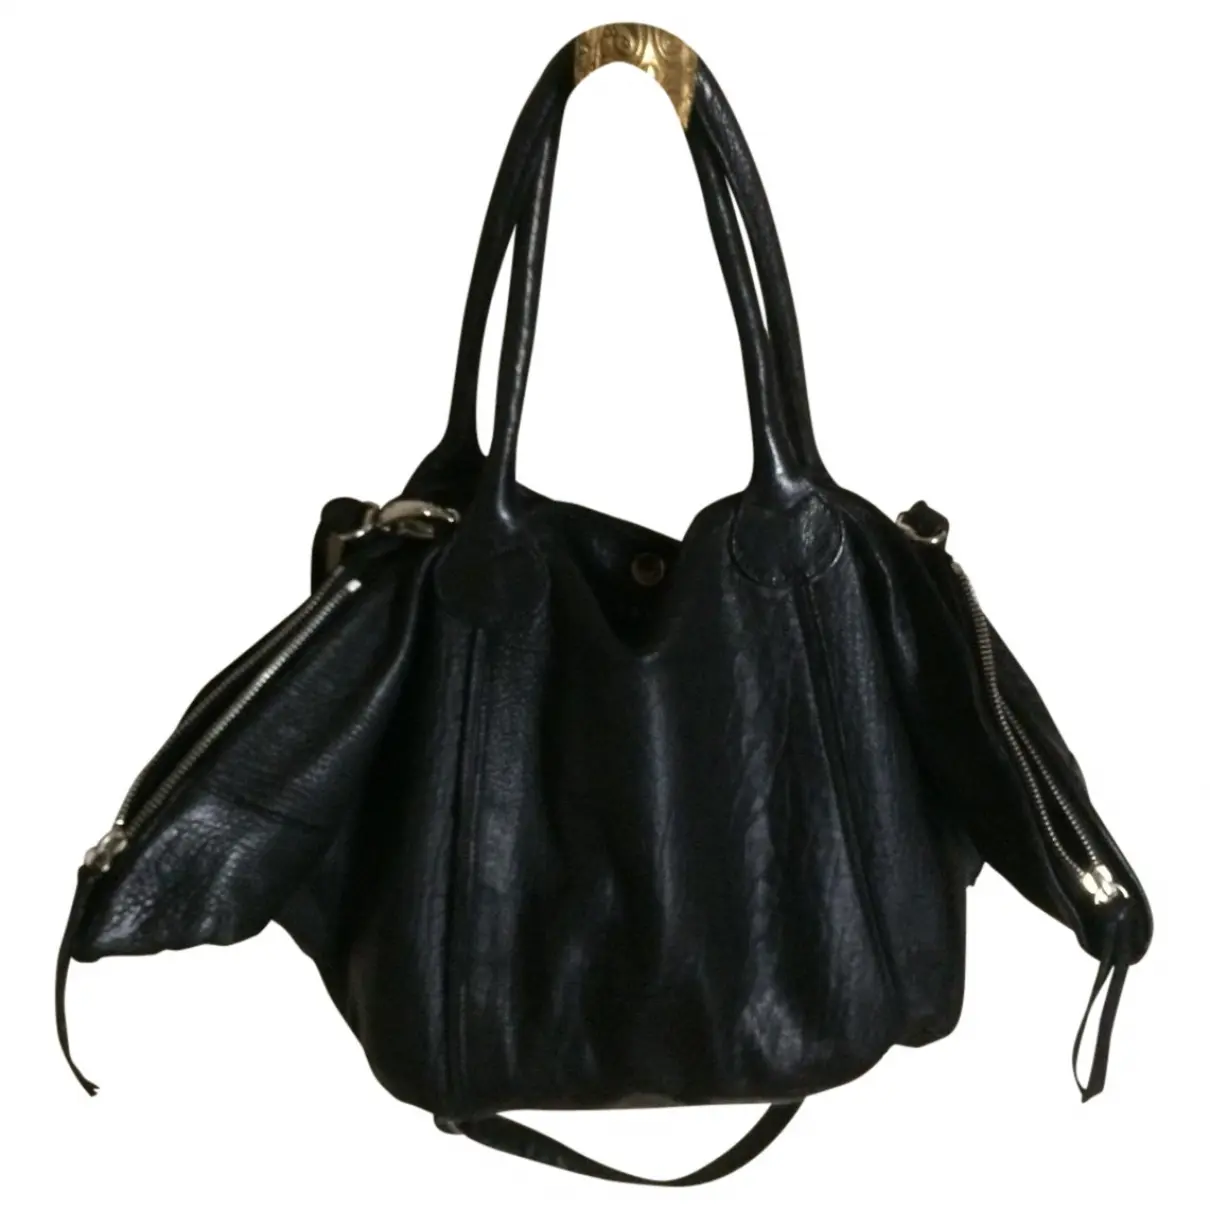 Black Leather Handbag Aridza Bross